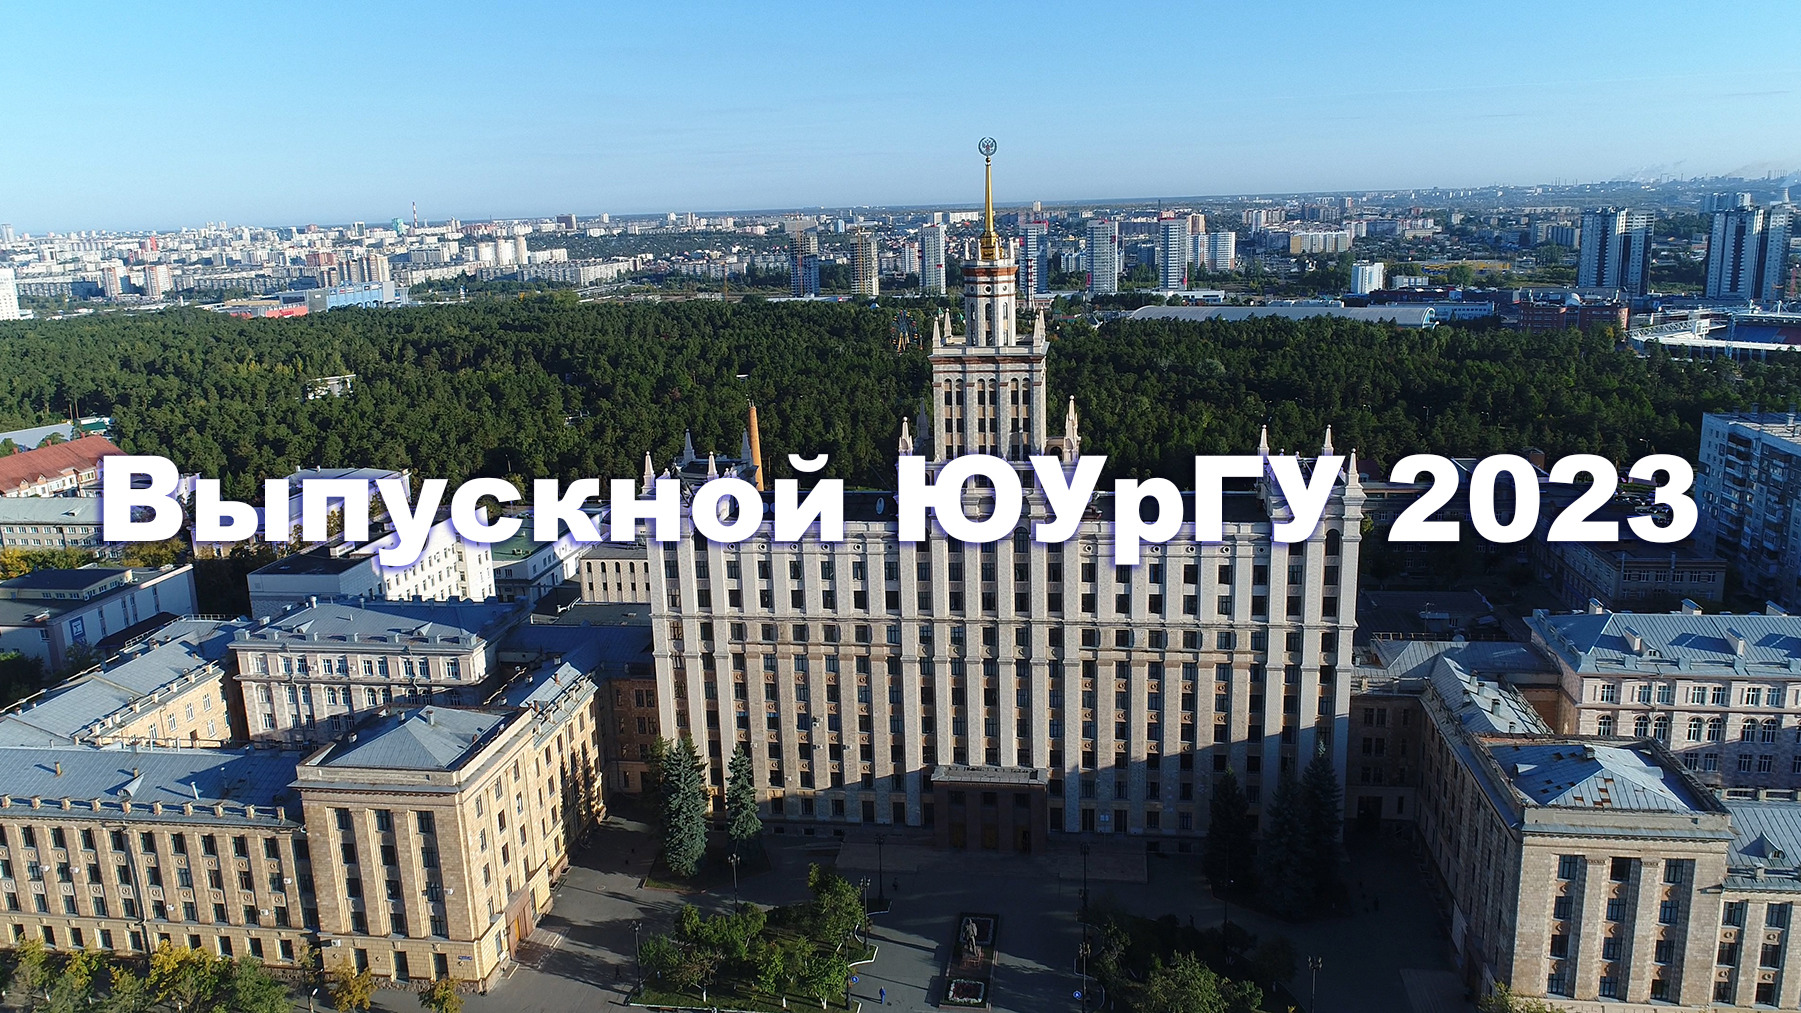 Запись трансляции торжественной церемонии «Выпускной ЮУрГУ 2023» г.Челябинск от 1 июля 2023 года